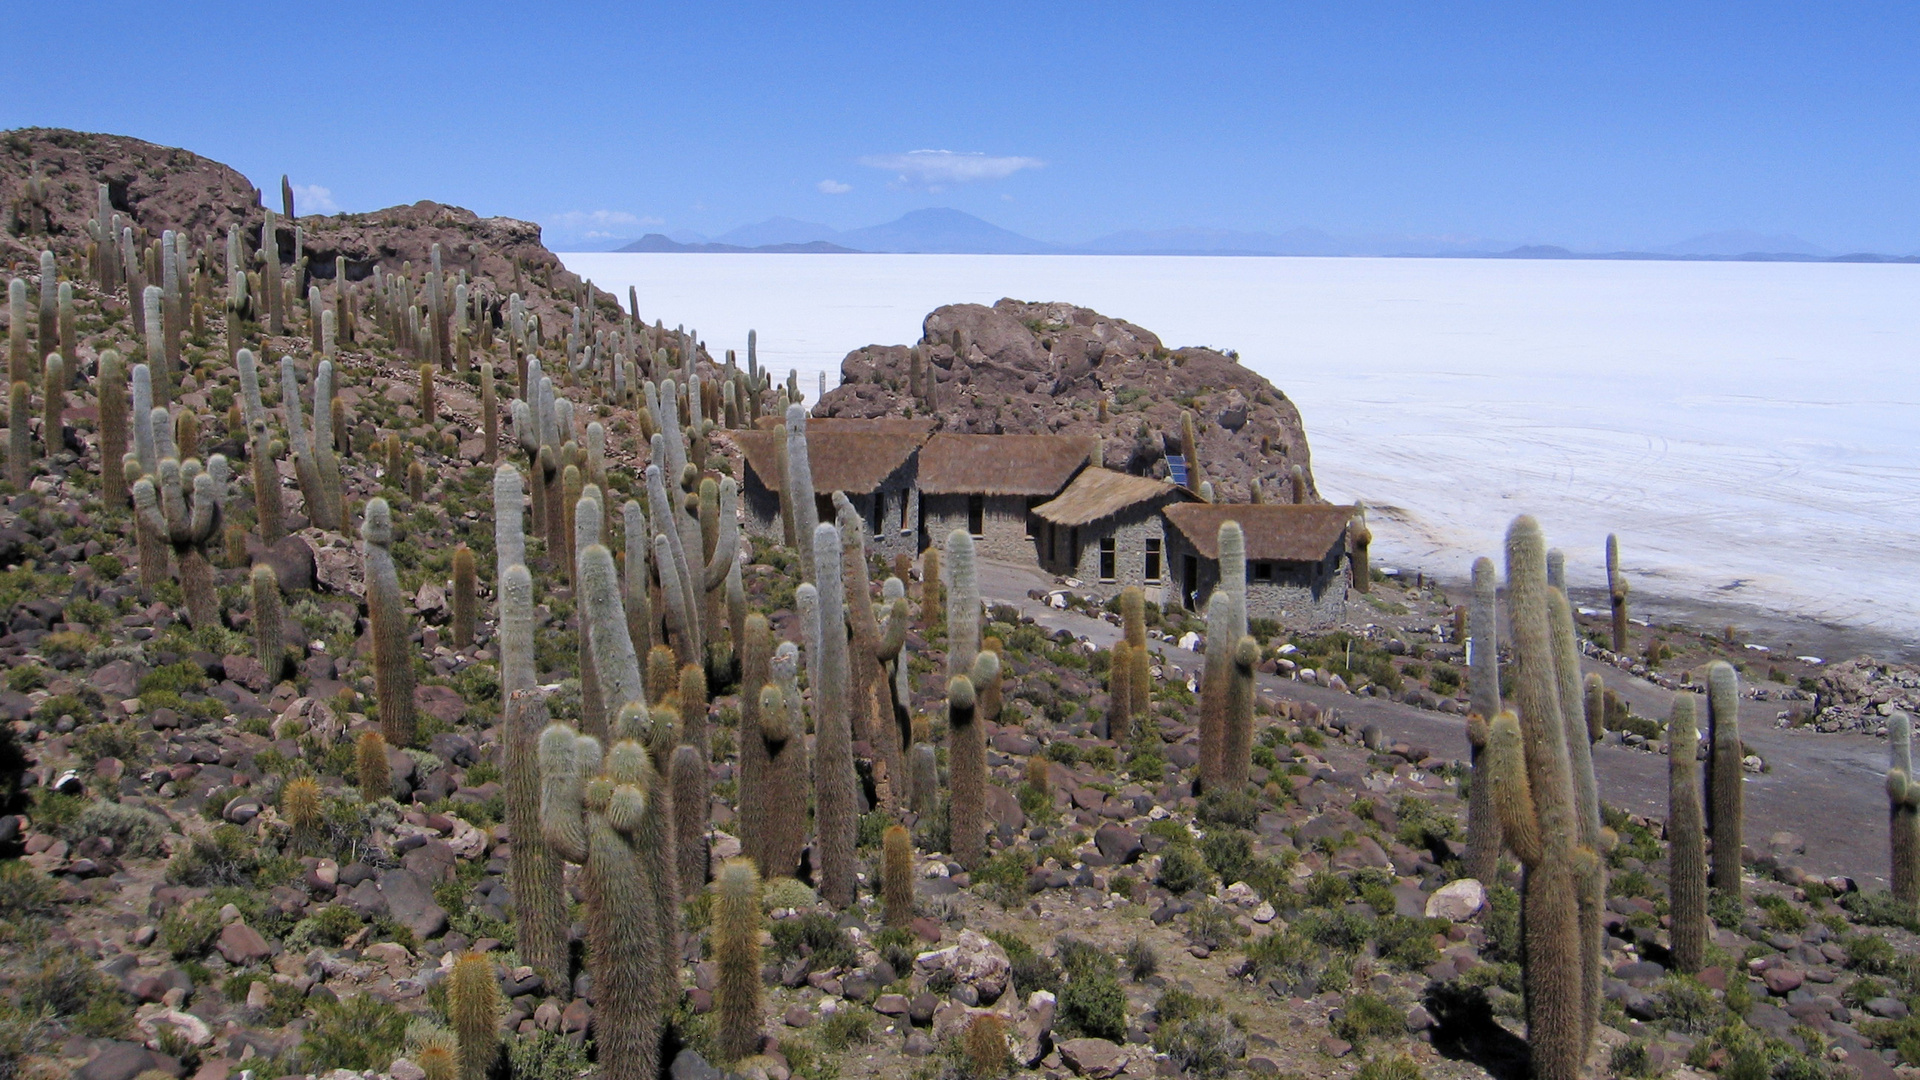 Salar de Uyuni Kakteeninsel Inkahuasi Bolivien